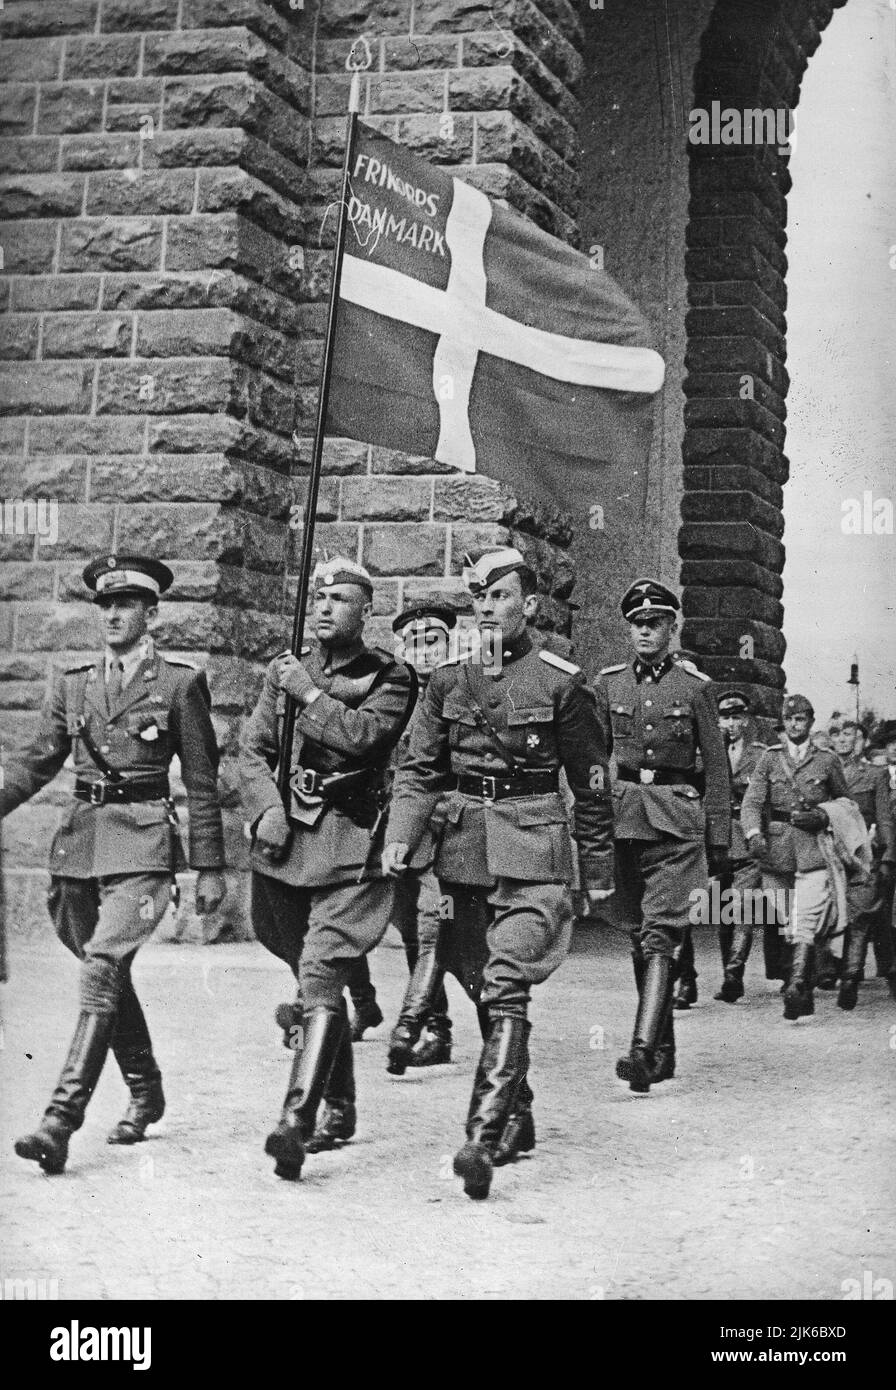 Les troupes de l'élite allemande nazie les Waffen-SS avaient de nombreuses divisions de volontaires étrangers qui croyaient au nazisme. Ici, les membres du corps libre Danemark marchent en Allemagne, juillet 1941 Banque D'Images